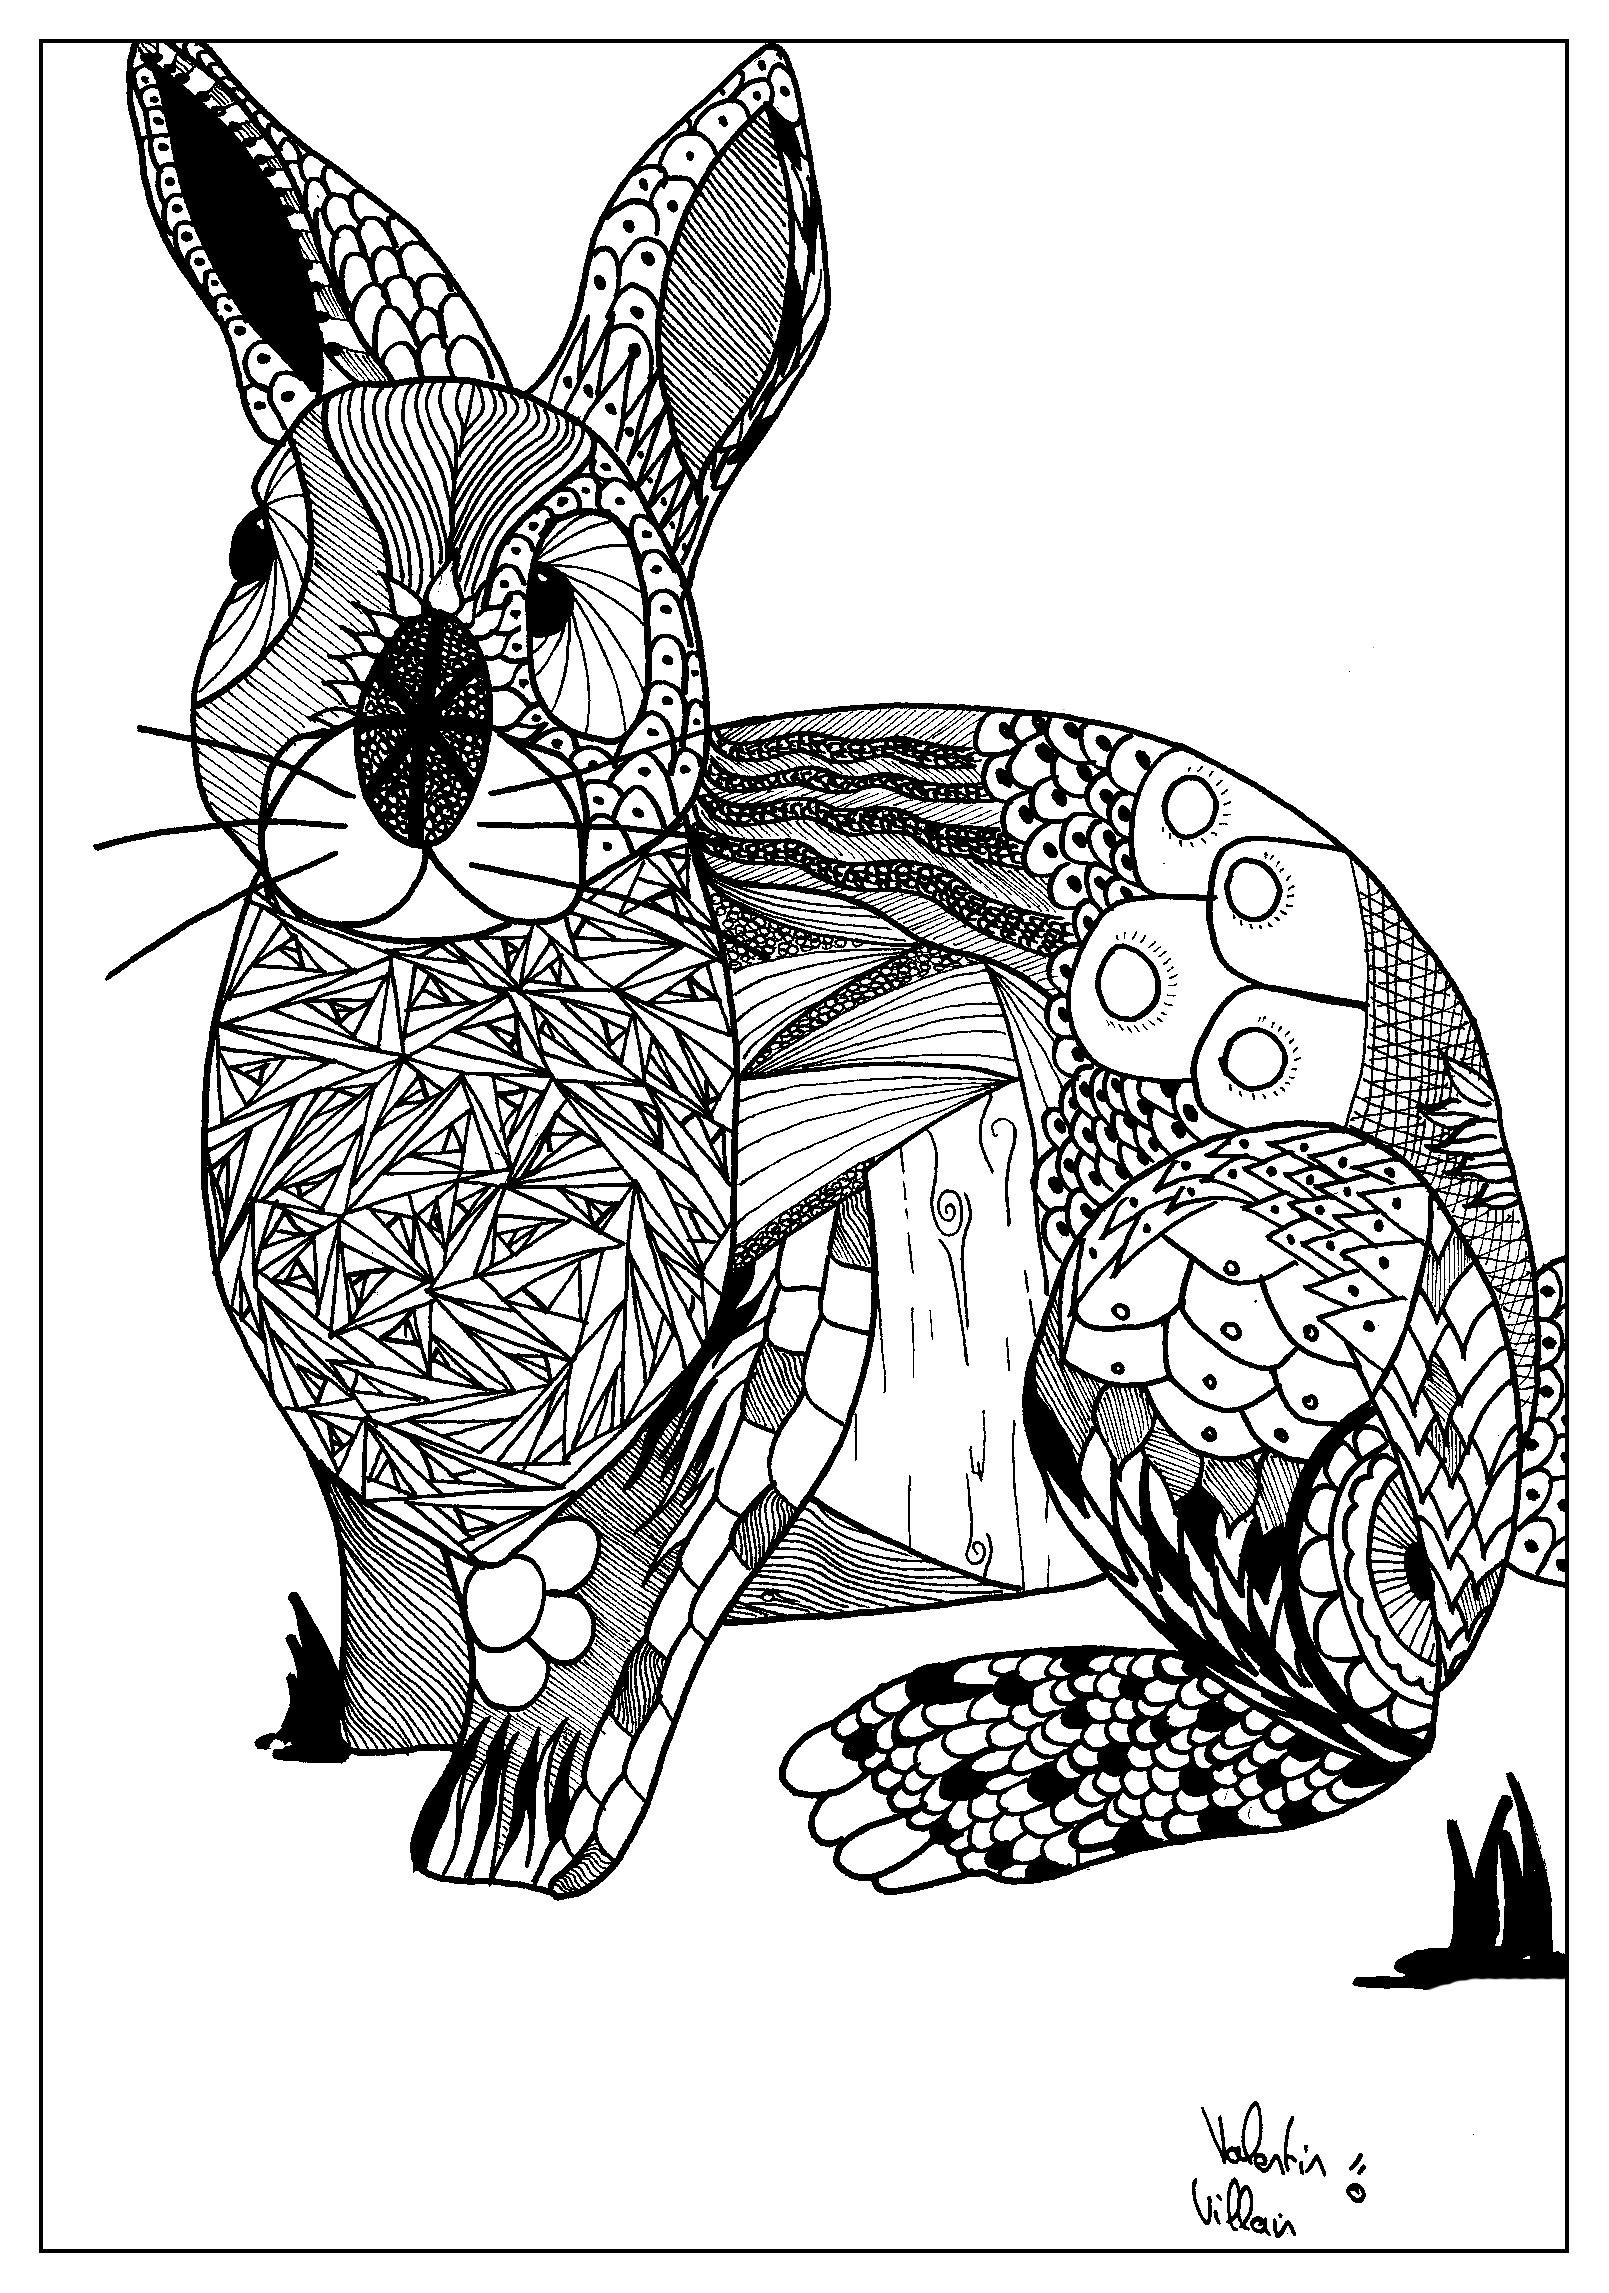 Kaninchen im Zentangle-Stil gezeichnet